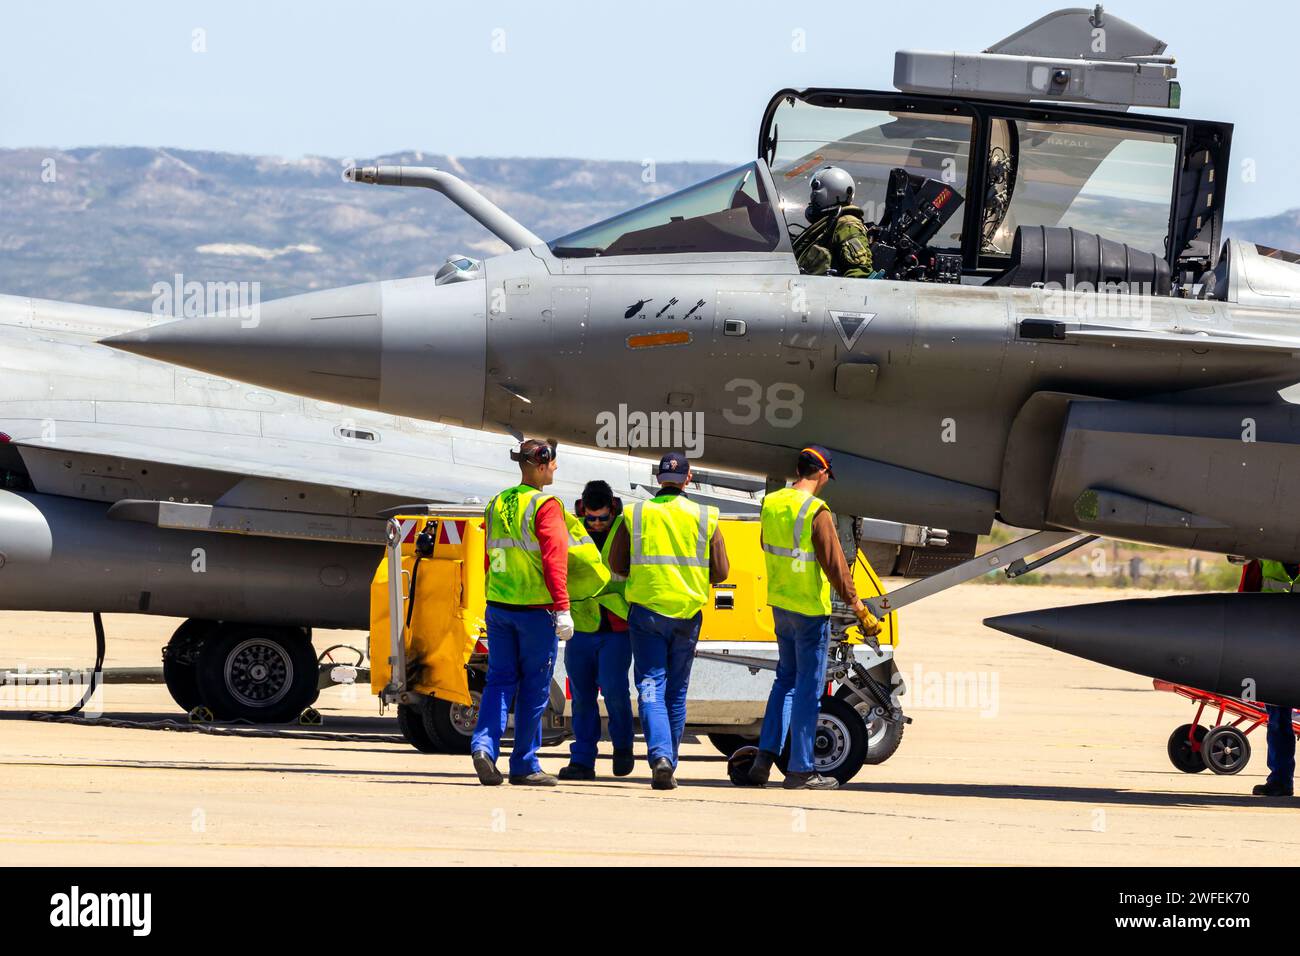 Kampfflugzeuge der französischen Marine Rafale bereiten sich auf dem Rollfeld des Luftwaffenstützpunkts Saragoza vor. Saragoza, Spanien - 20. Mai 2016 Stockfoto